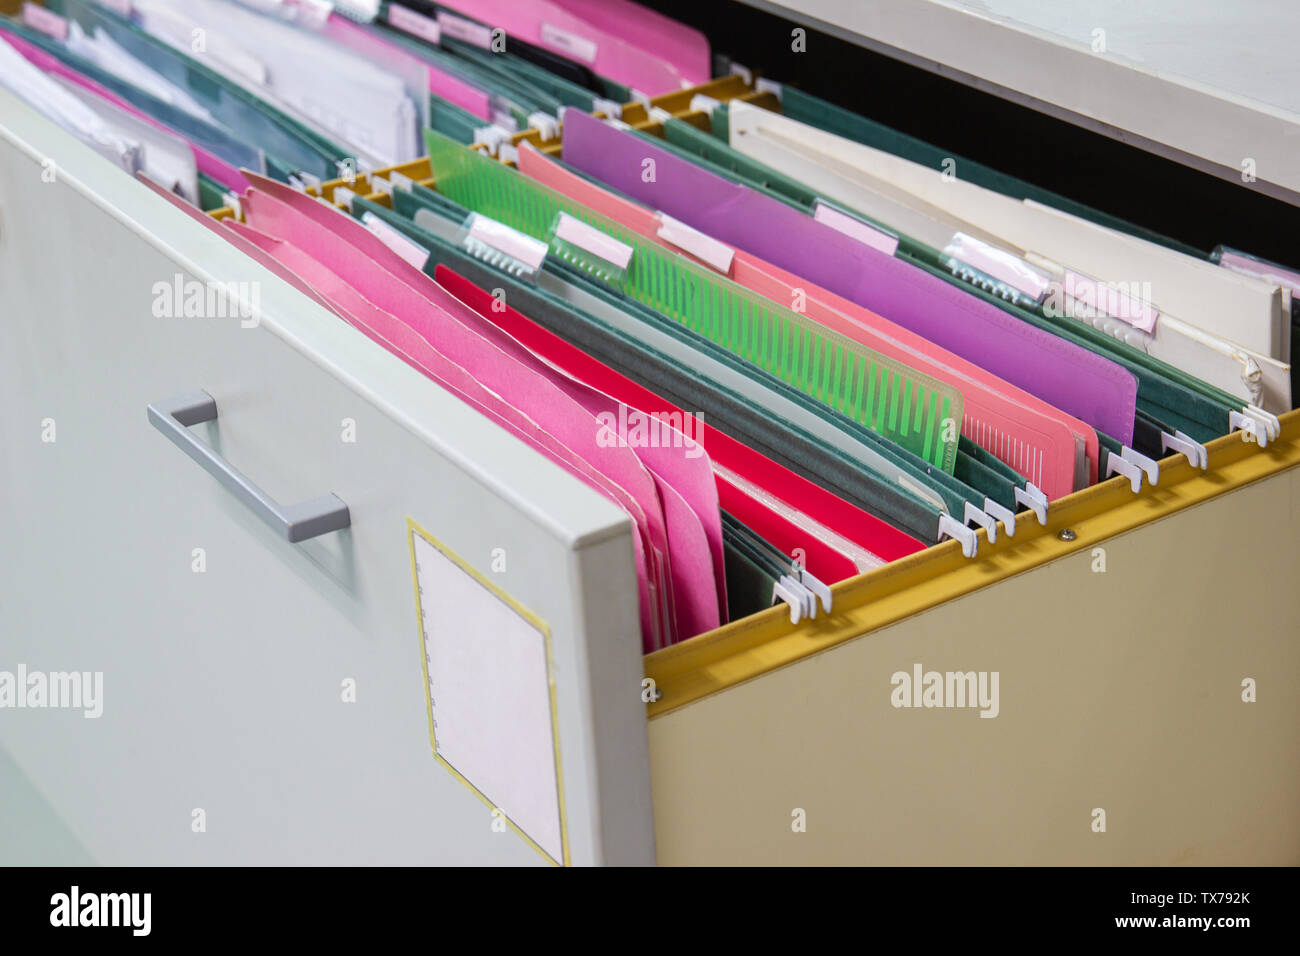 Los archivos de las carpetas de archivos de documento colgado en un cajón un montón de documentos completos, en la oficina de trabajo, Concepto de negocio de almacenamiento de documentos de